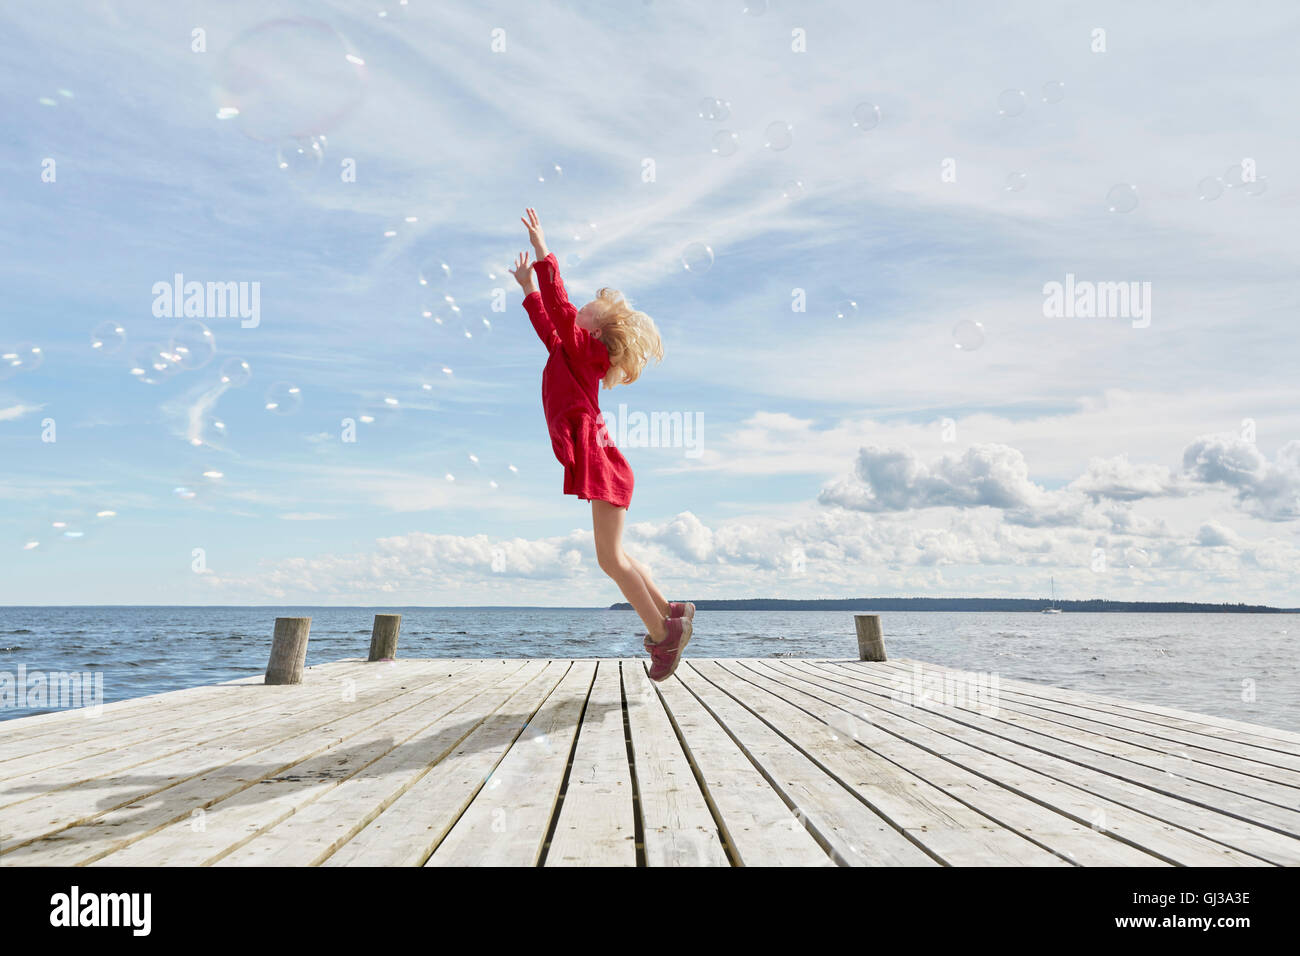 Giovane ragazza sul molo in legno, saltando per raggiungere le bolle Foto Stock